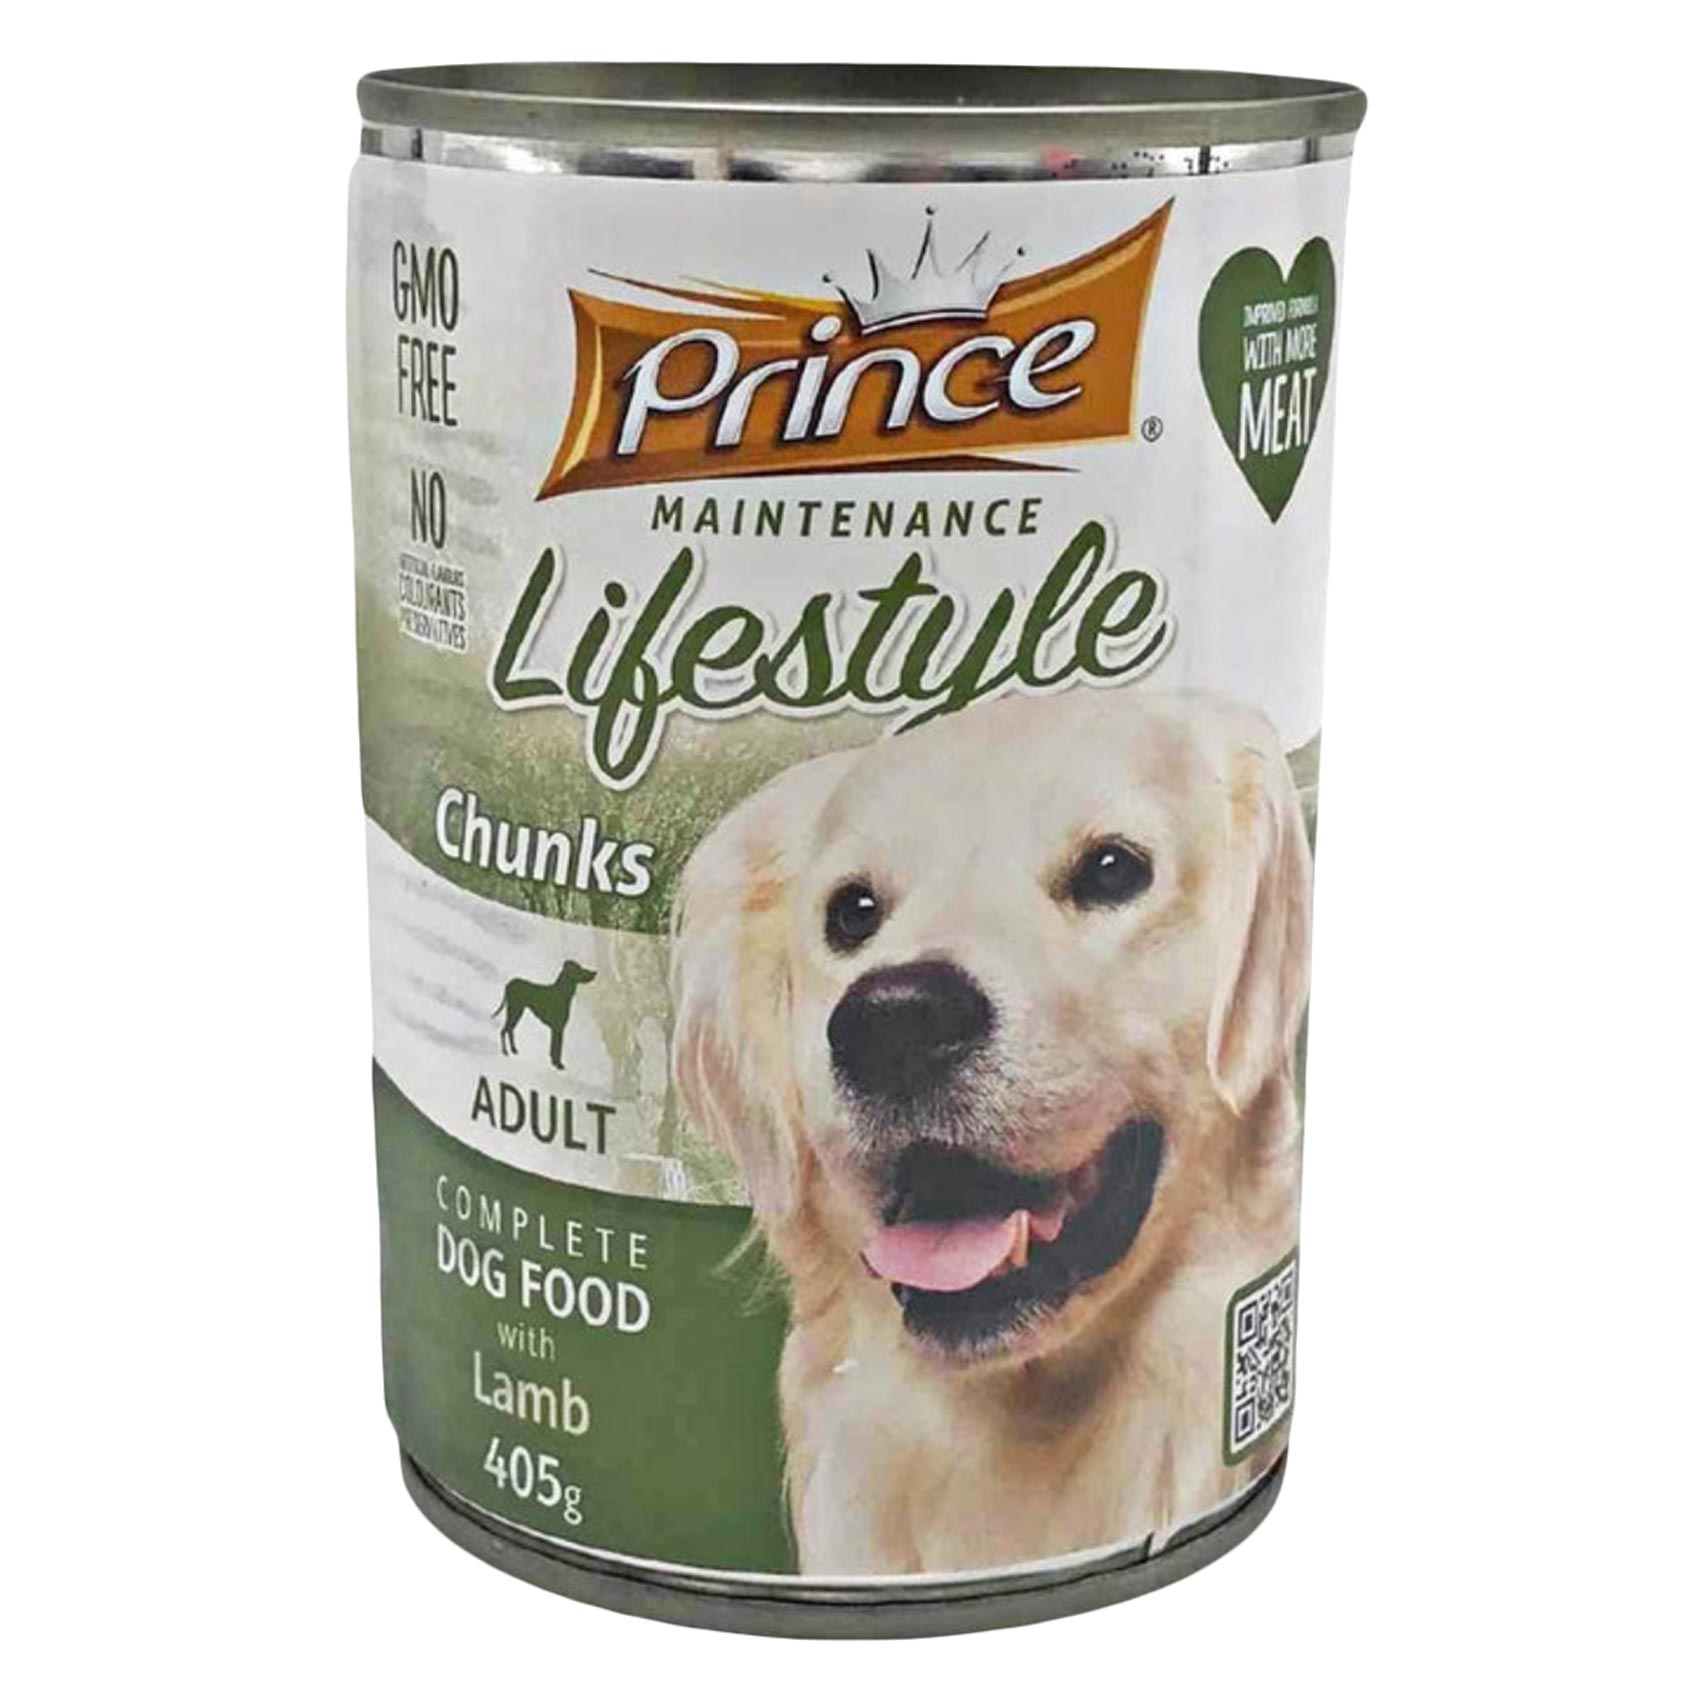 Prince Chunks Lamb Dog Food 405g